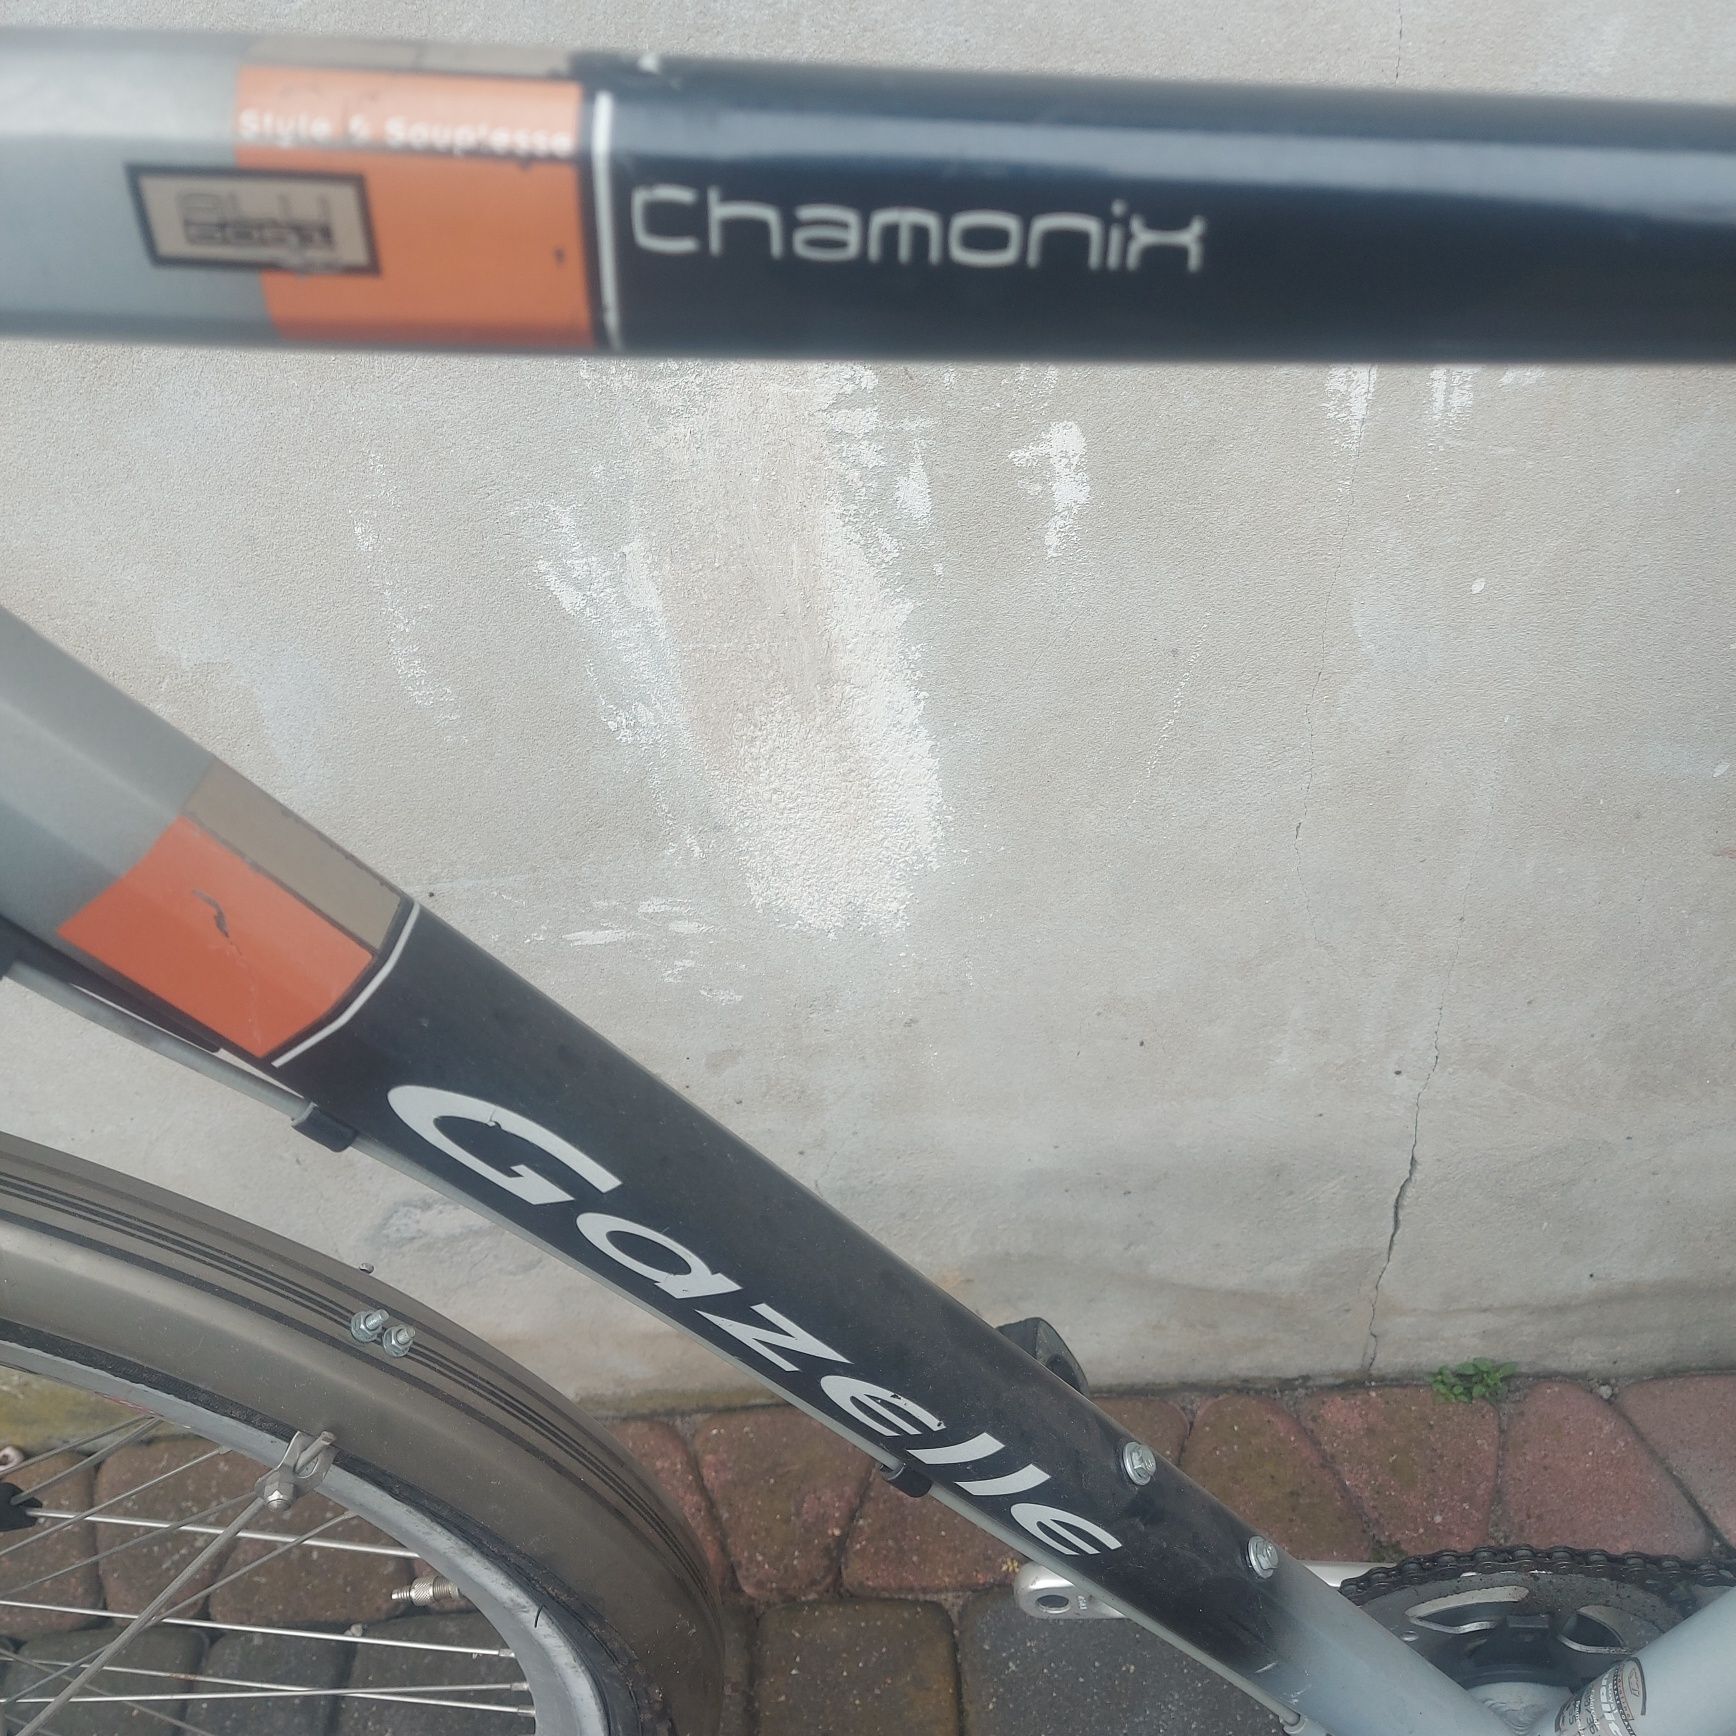 Sprzedam rower gazelle chamonix rama 65